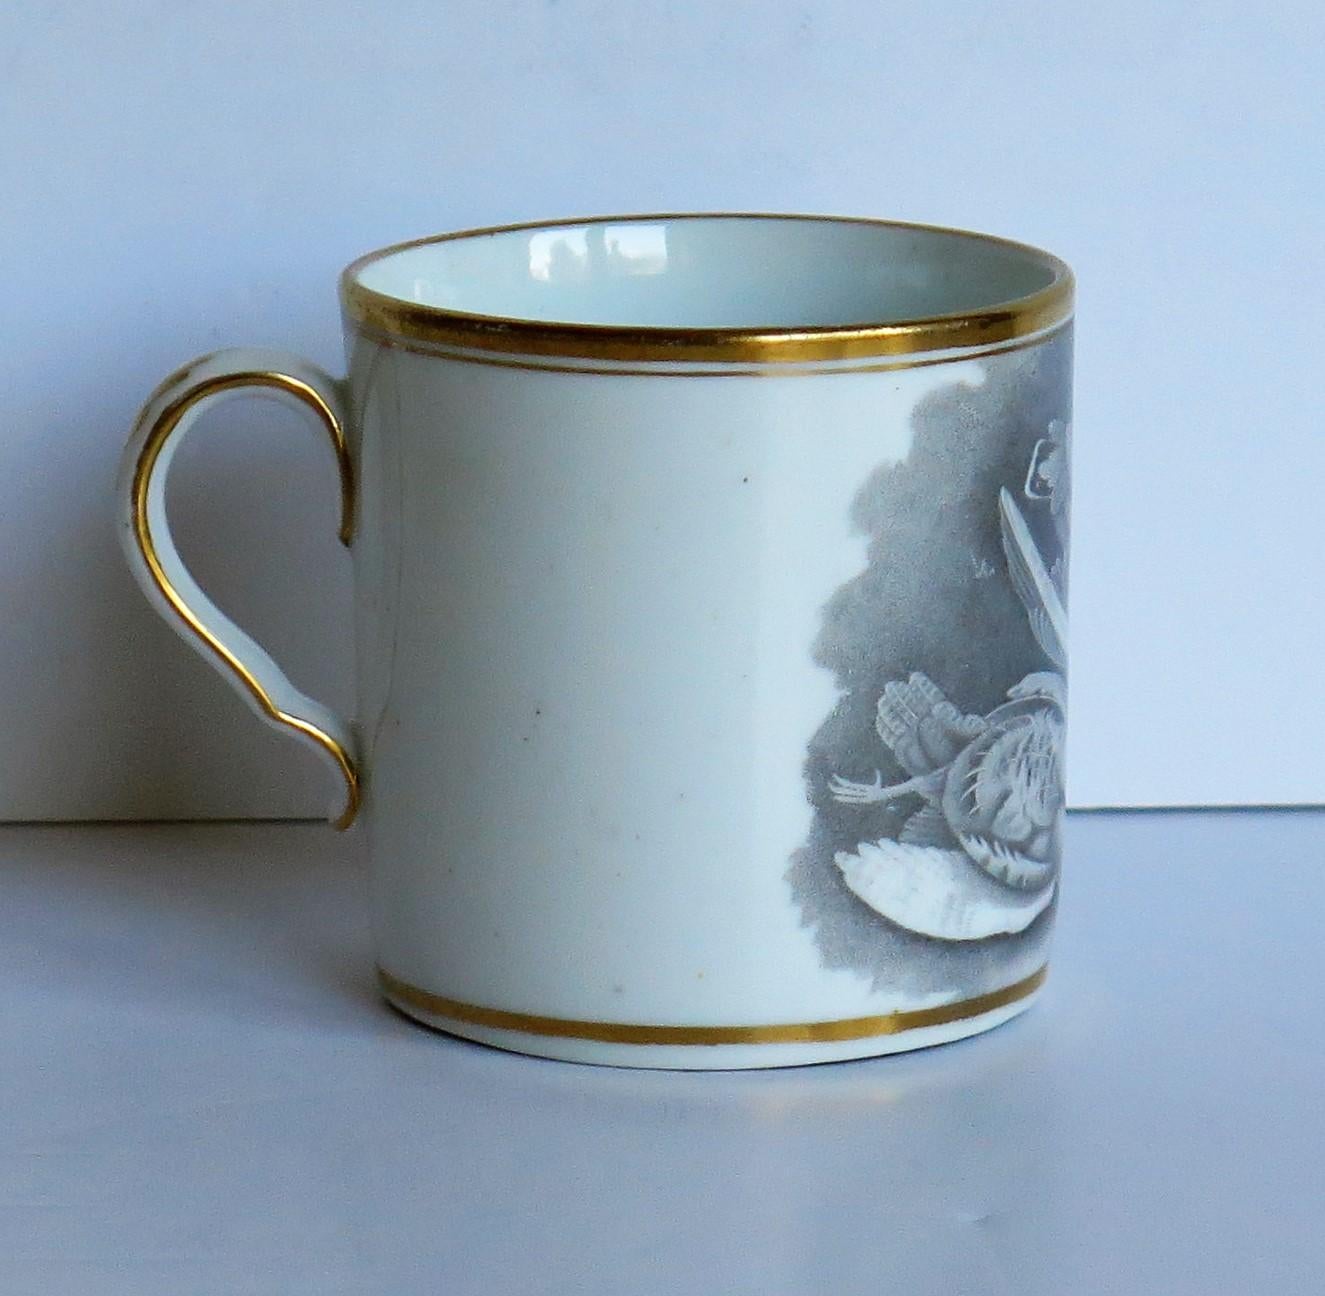 Dies ist ein sehr gutes Beispiel für eine englische George III Periode, Porzellan, Kaffeekanne, hergestellt von Spode, England im frühen 19. Jahrhundert, um 1810.

Die Can ist nominell gerade und hat den Spode-Loop-Henkel mit einem ausgeprägten